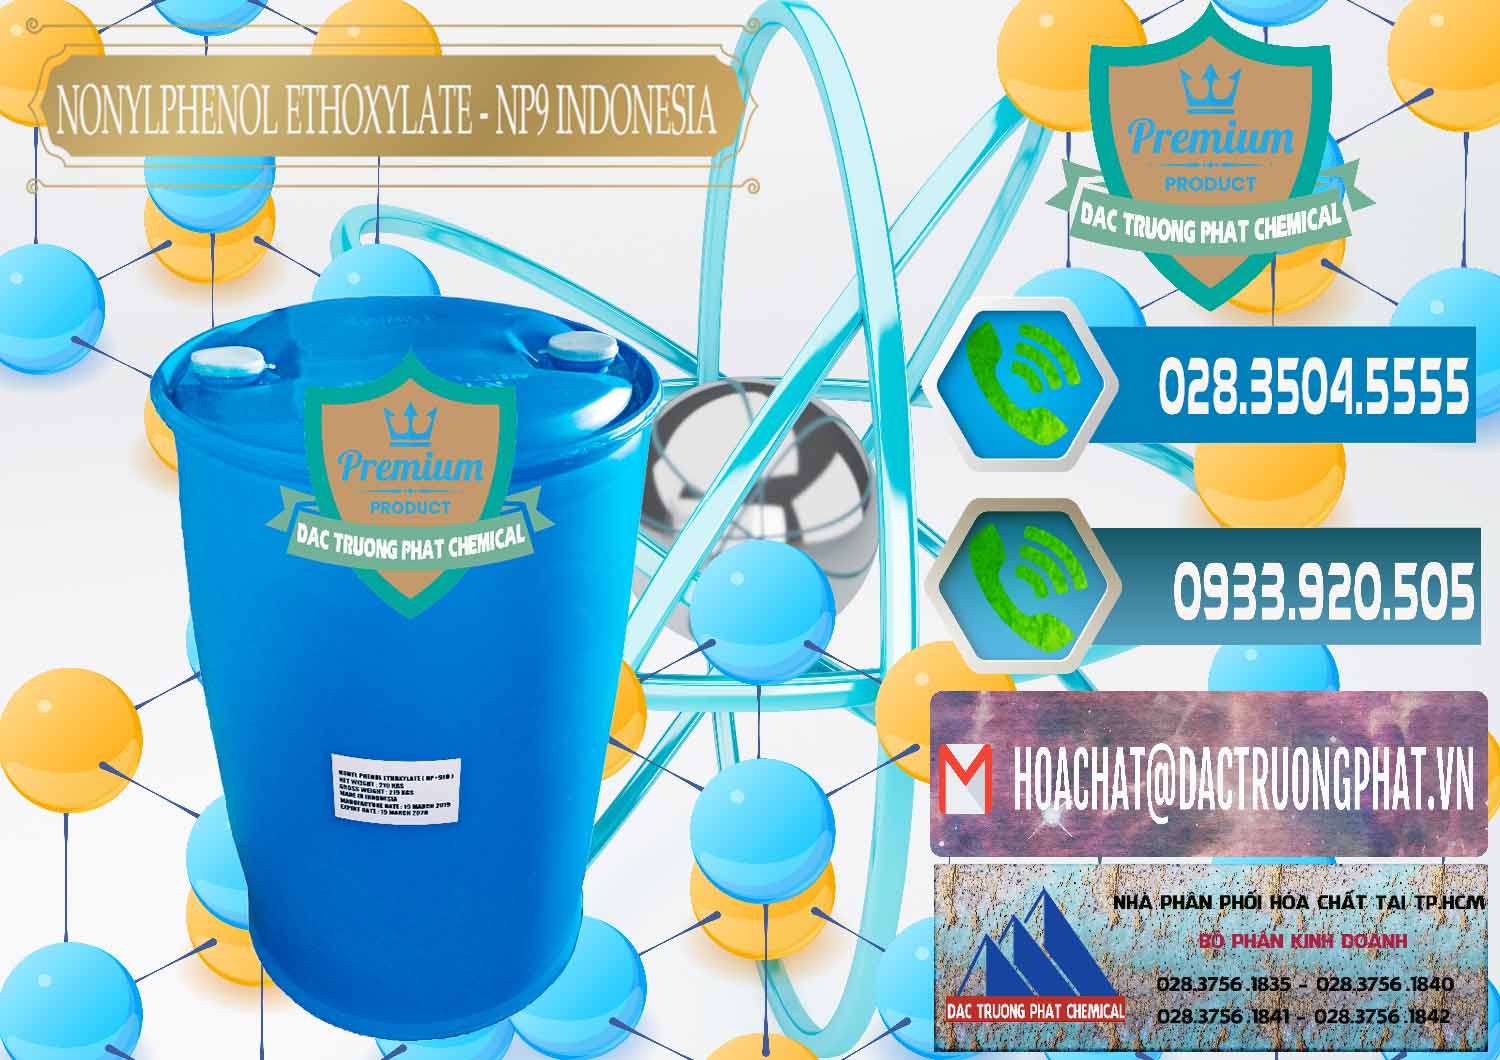 Chuyên bán và cung cấp NP9 - Nonyl Phenol Ethoxylate Indonesia - 0317 - Nơi nhập khẩu và cung cấp hóa chất tại TP.HCM - congtyhoachat.net